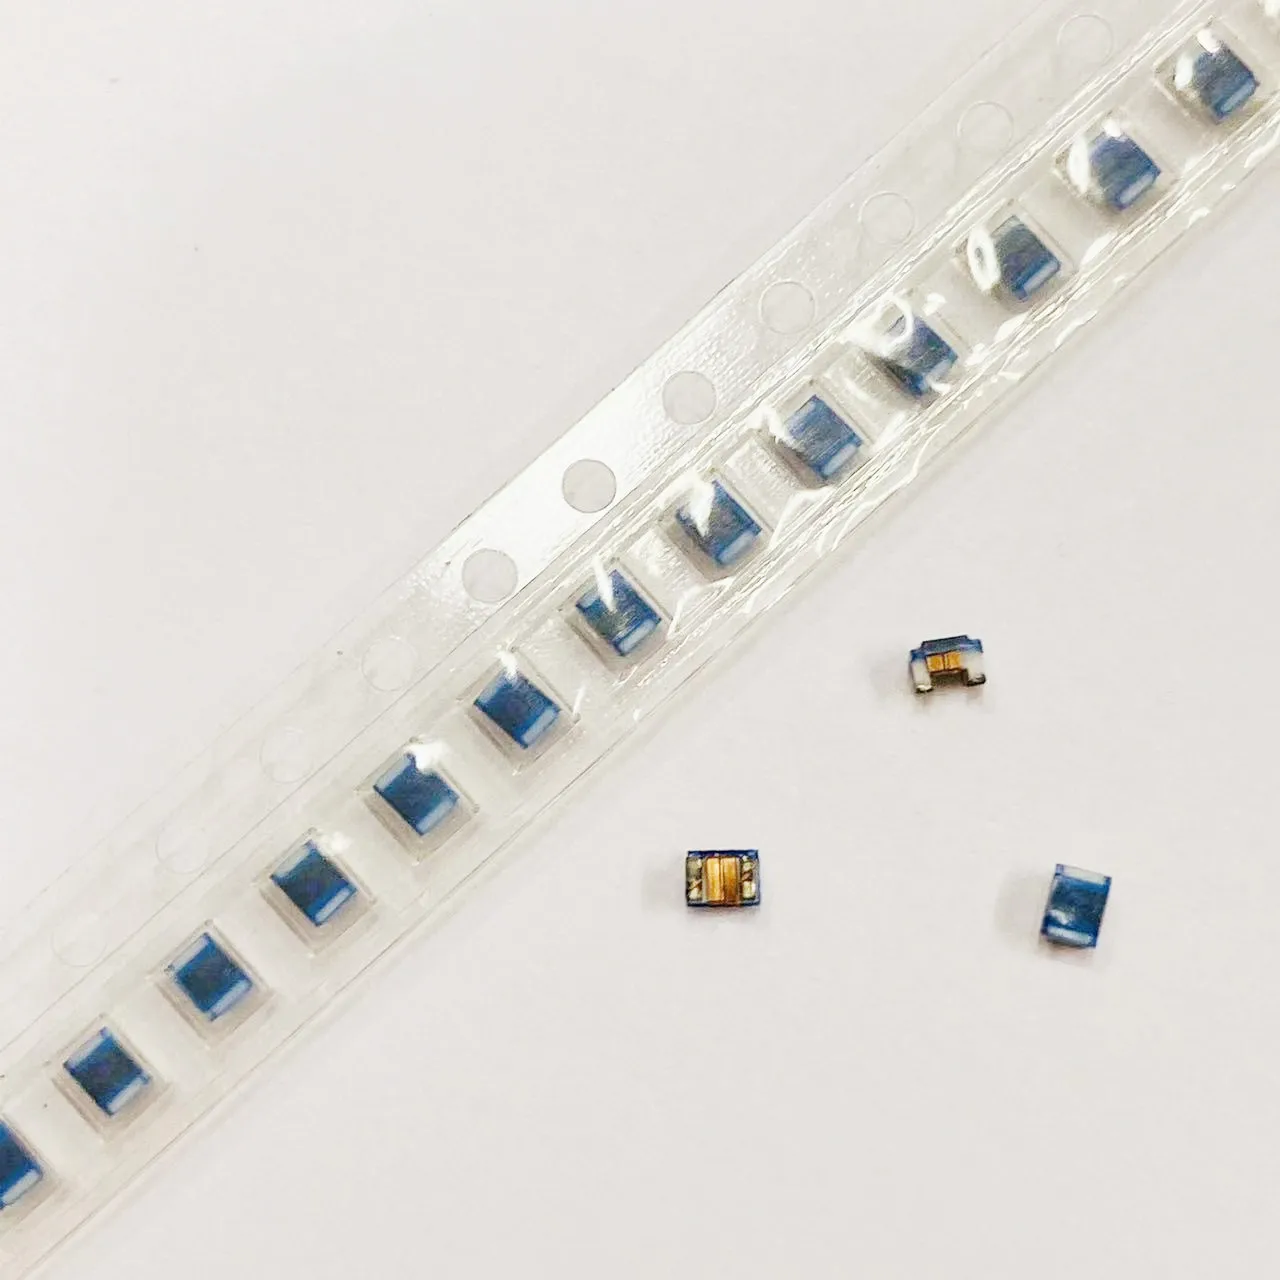 

100 шт. новые оригинальные проволочные чиповые индукторы 0805 47nH 2012 47nH 500mA 0805CS-470XJEC